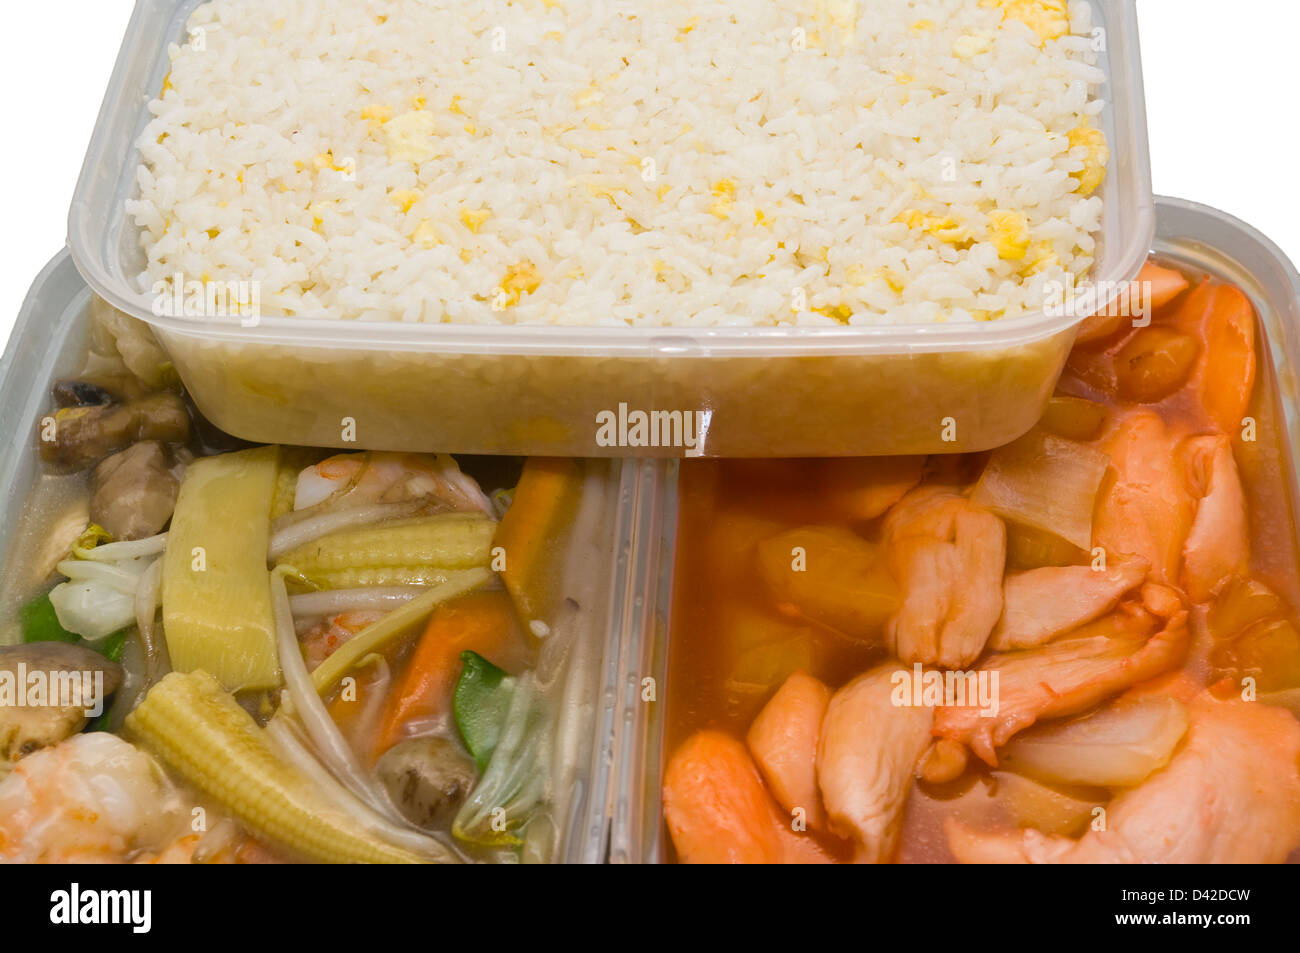 Chinesisch Essen In Kunststoff-Behältern zum mitnehmen Stockfoto